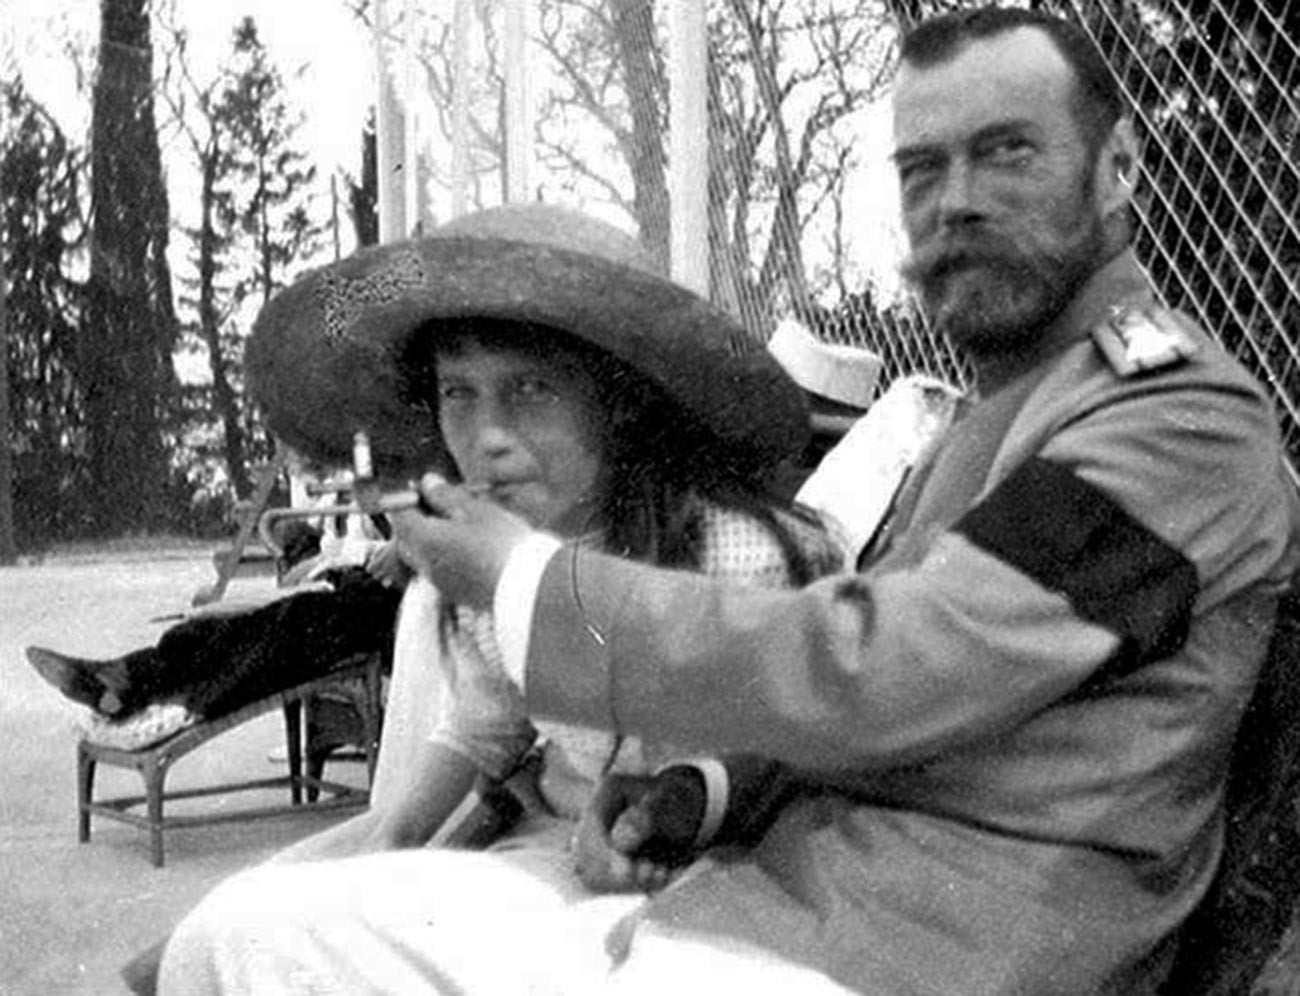 Lo zar Nicola II offre alla figlia Anastasia un tiro dal suo bocchino per sigarette